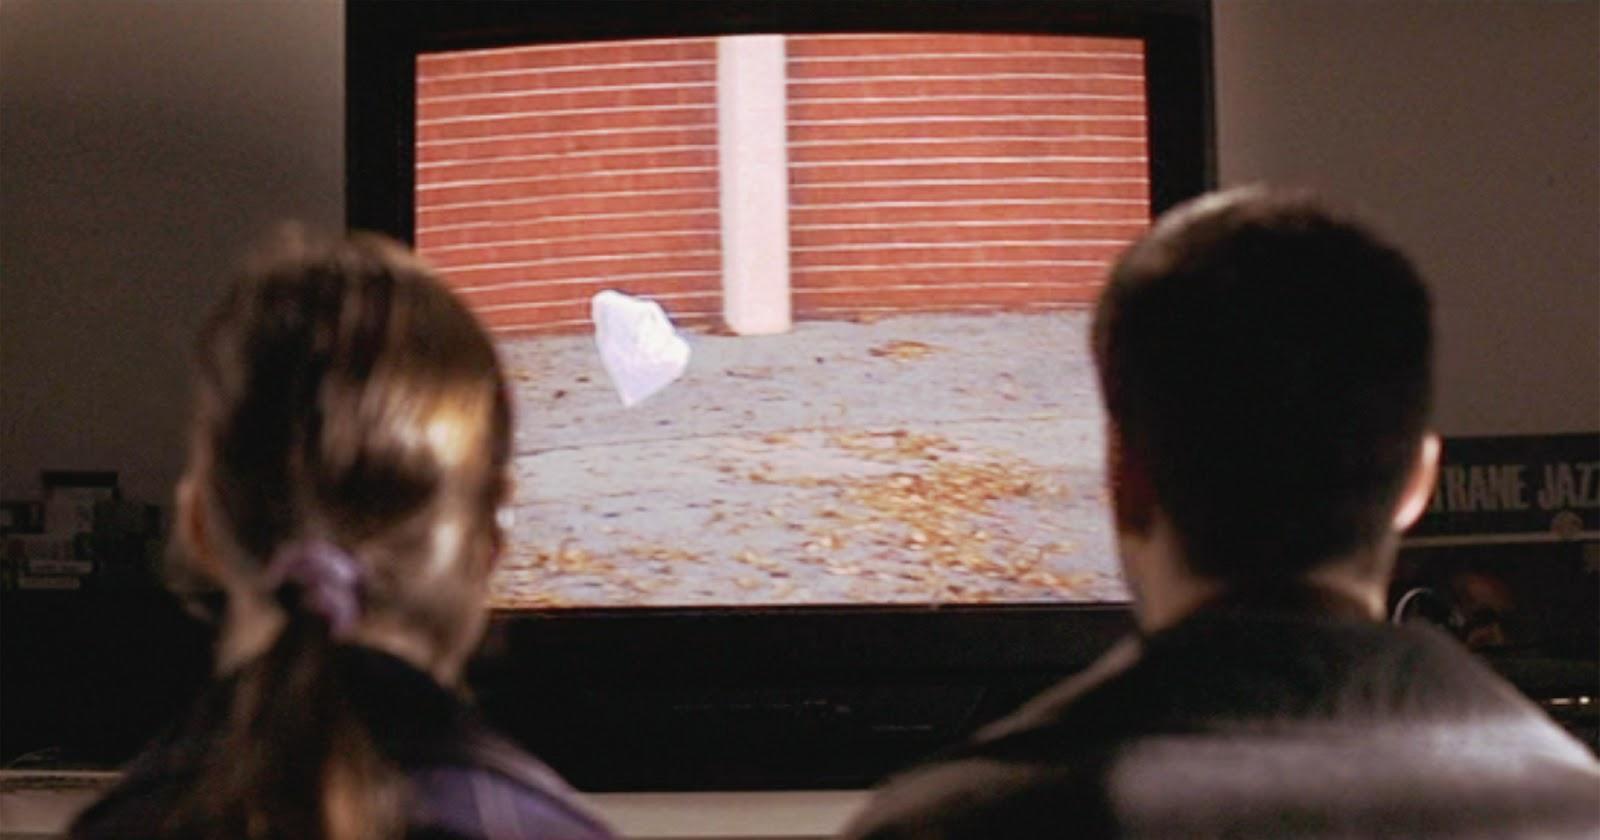 Jane (Thora Birch) y Ricky (Wes Bentley) de espaldas frente a un televisor, contemplando la famosa escena de la bolsa plástica bailando al viento.